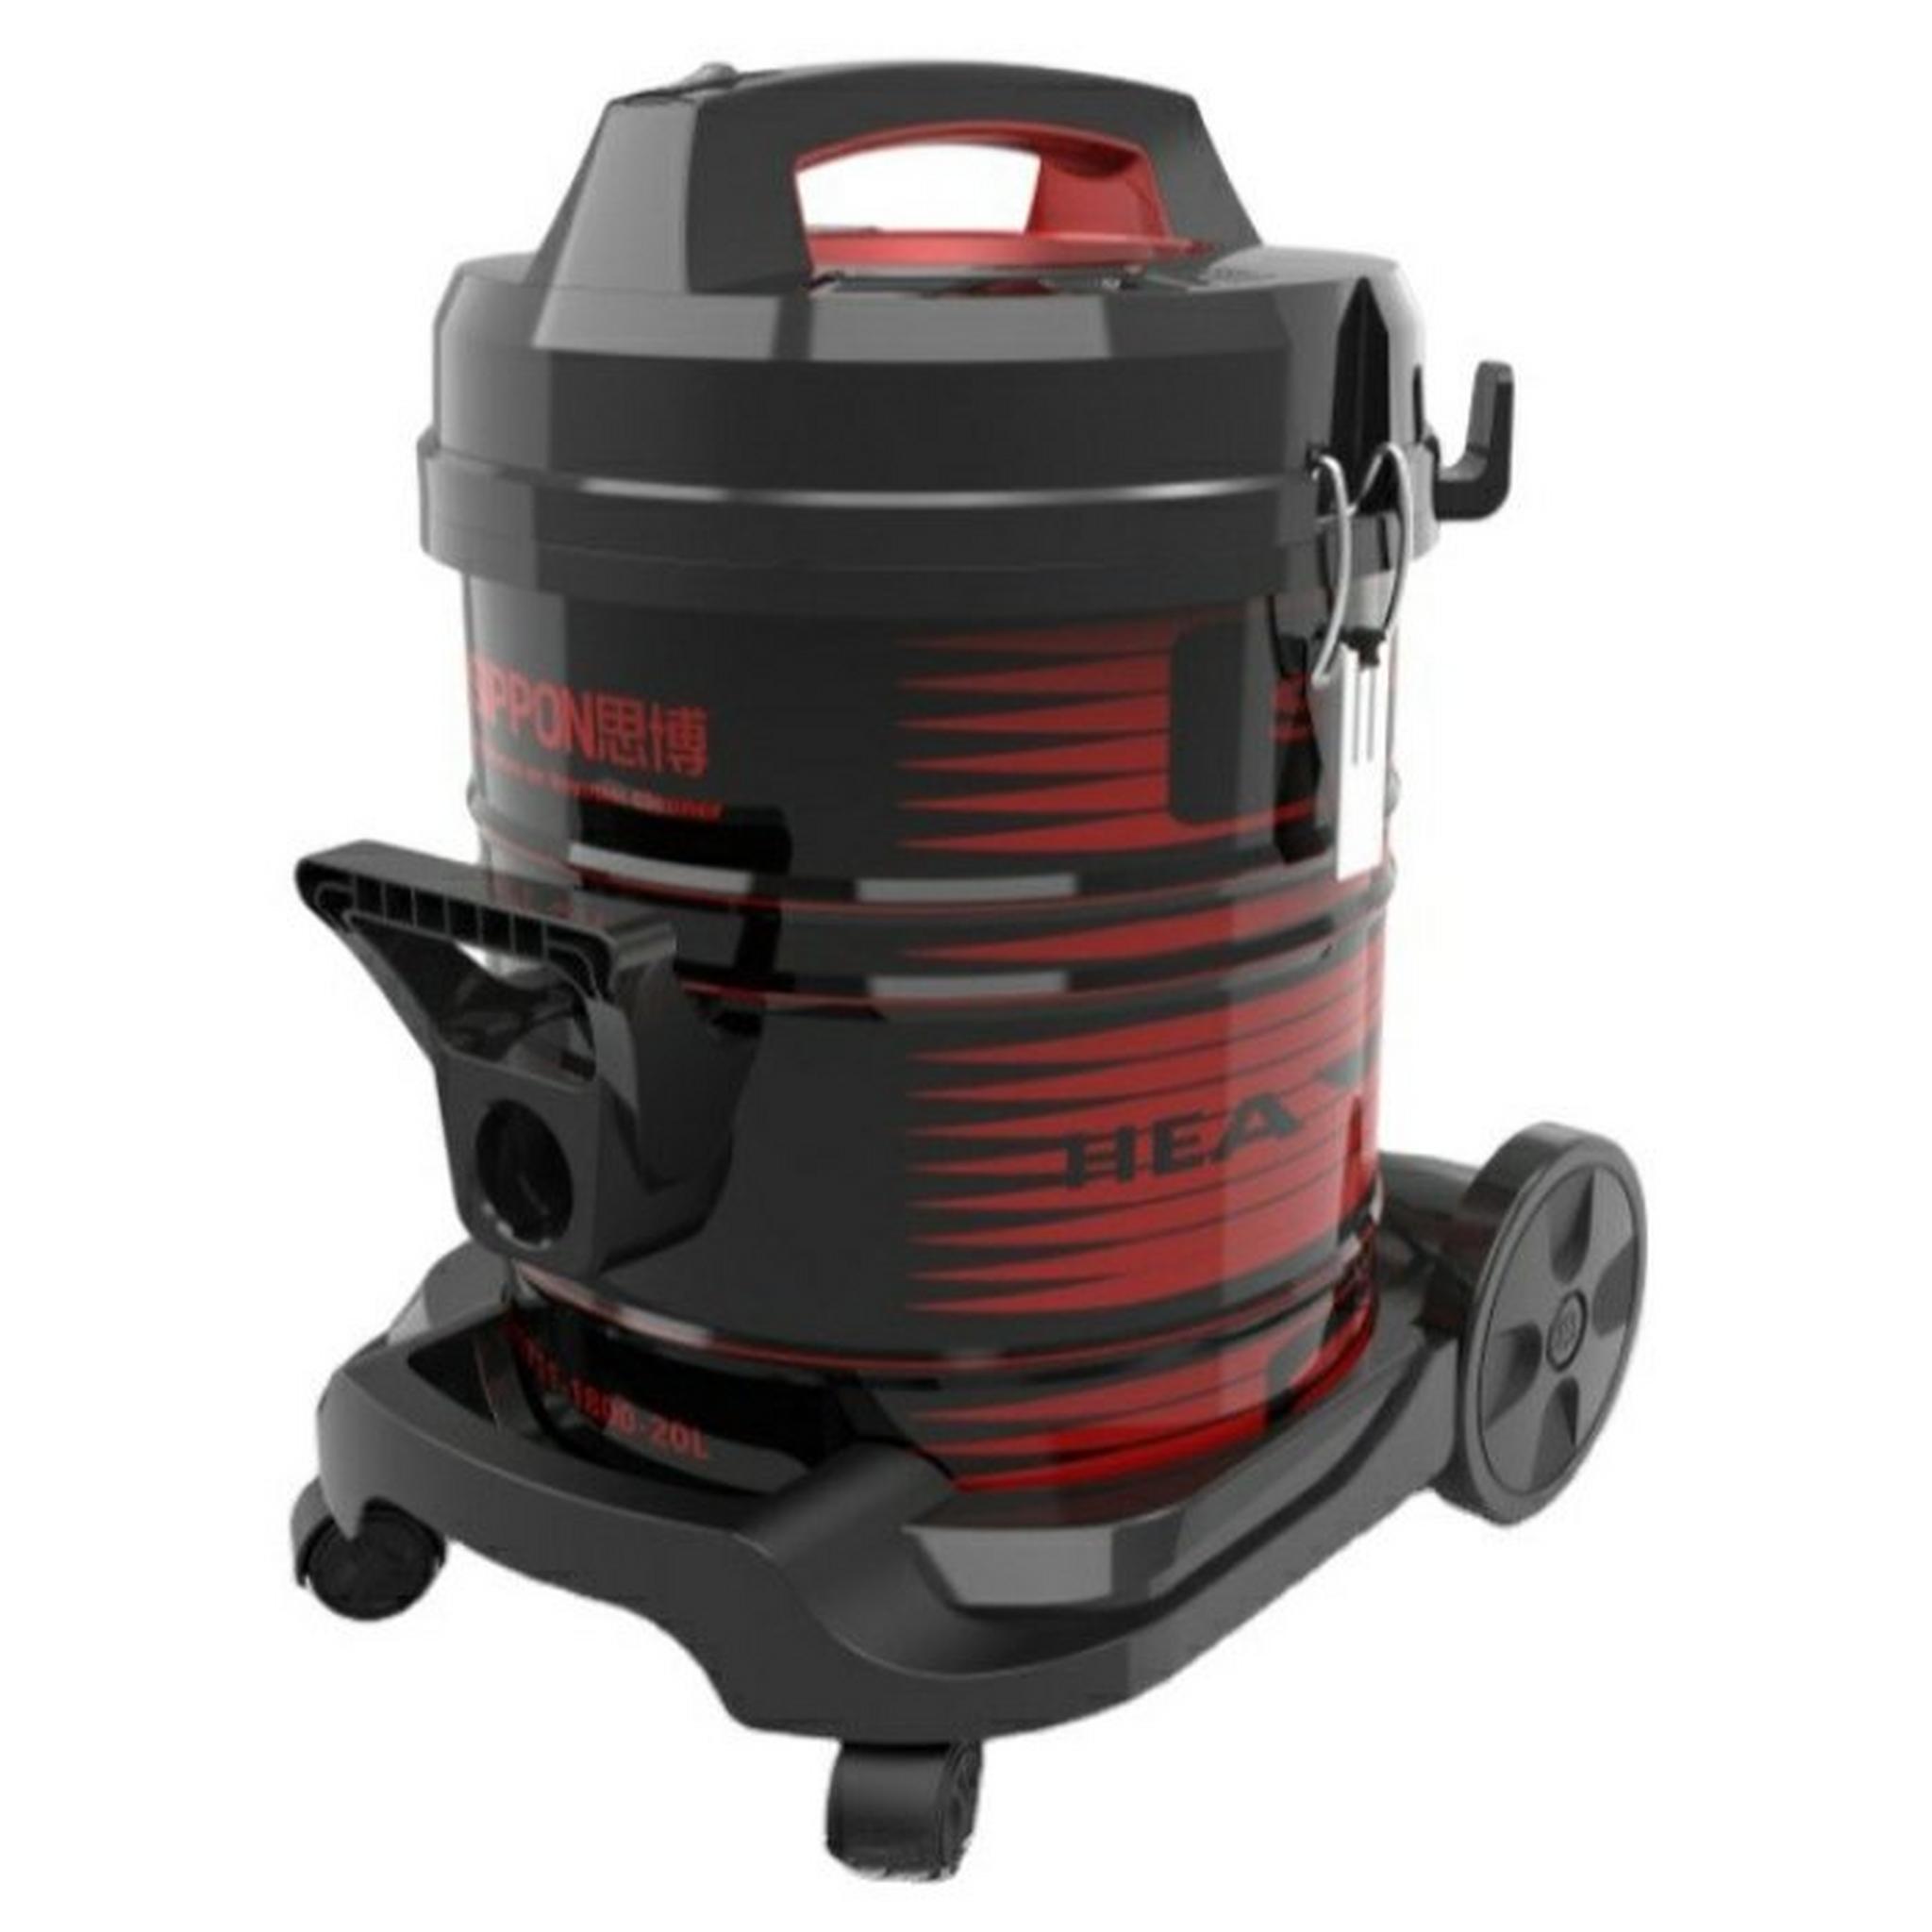 Frigidaire Drum Vacuum Cleaner, 2000W, 20 Liters, FD-DV9408 - Black